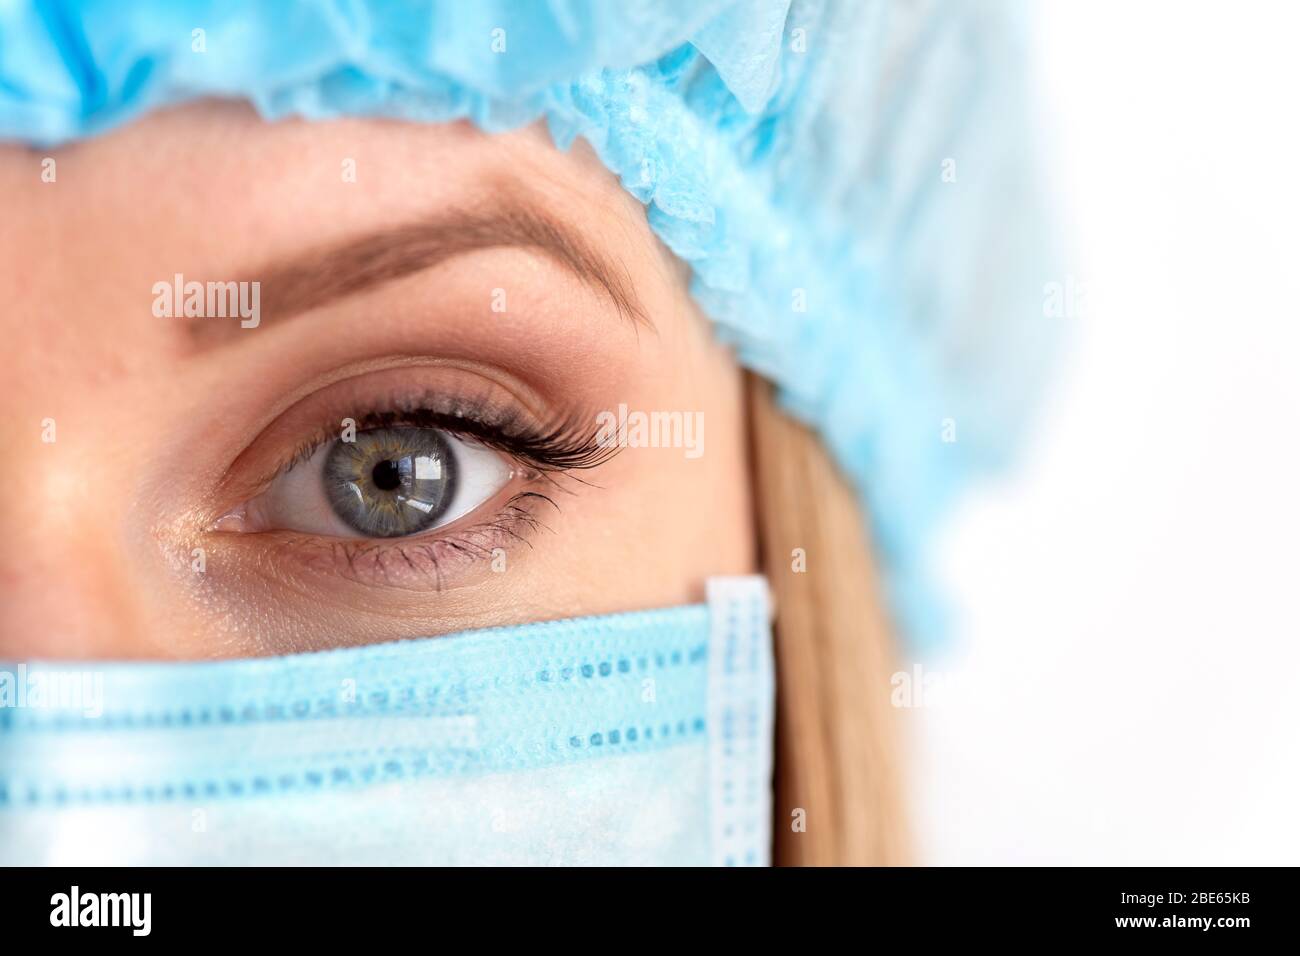 Chiudere l'occhio di un medico chirurgo femminile adulto che indossa la maschera protettiva e il cappuccio. Assistenza sanitaria, assistenza medica di emergenza e concetto di chirurgia Foto Stock